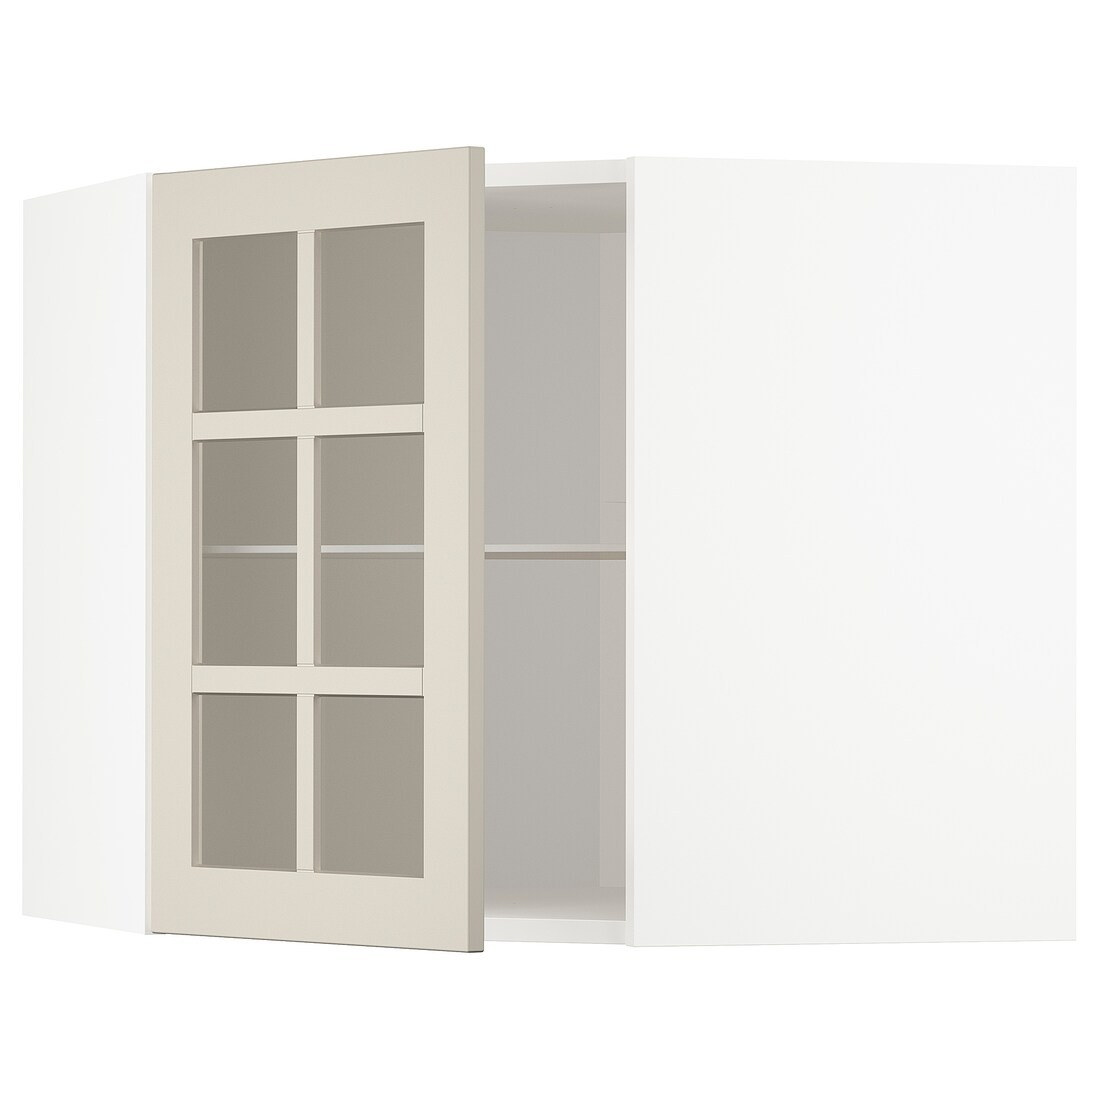 METOD МЕТОД Кутова настінна шафа з полицями / скляні двері, білий / Stensund бежевий, 68x60 см